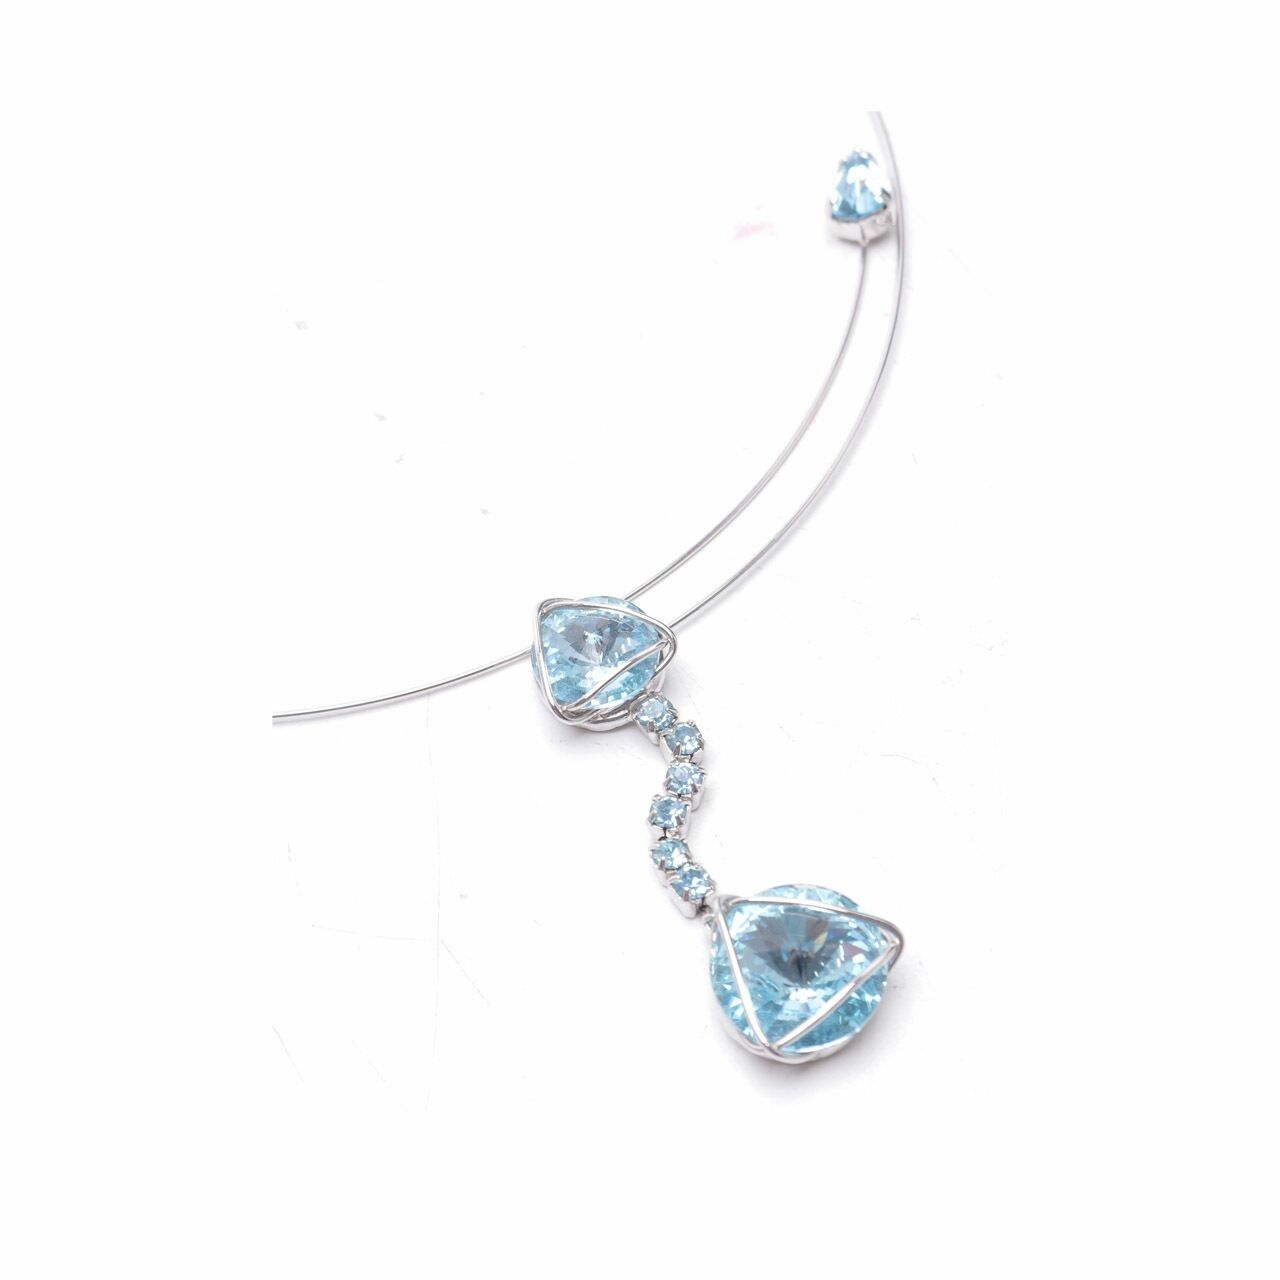 Lps Bijoux Blue Necklace